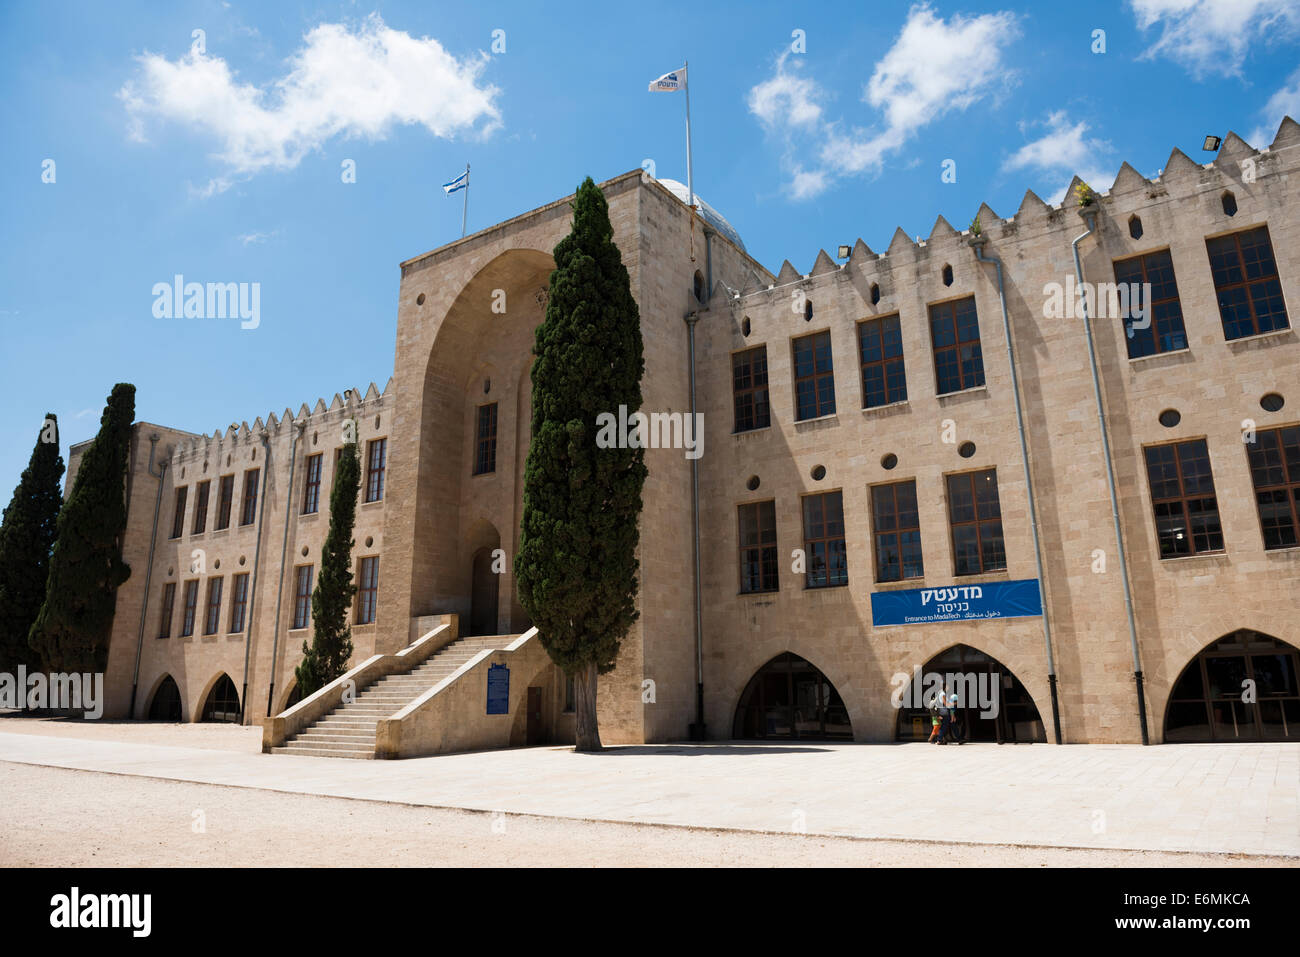 El Museo Nacional de Israel de la ciencia, la tecnología y el espacio es un museo de ciencia y tecnología en la ciudad de Haifa, Israel. Foto de stock